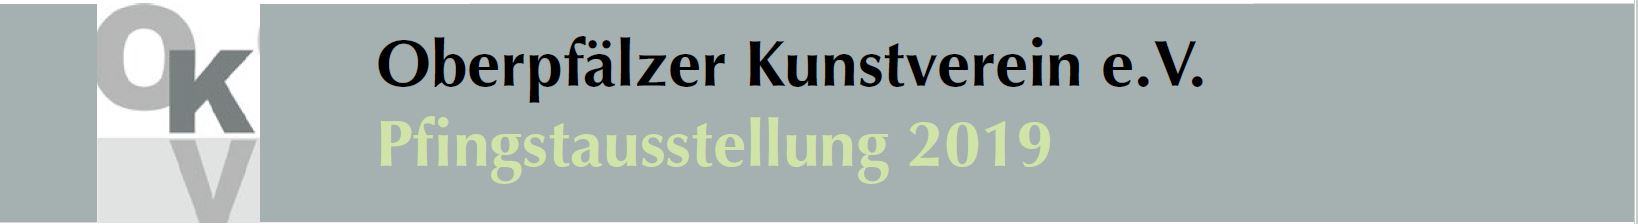 Oberpfälzer Kunstverein - Pfingstausstellung 2019